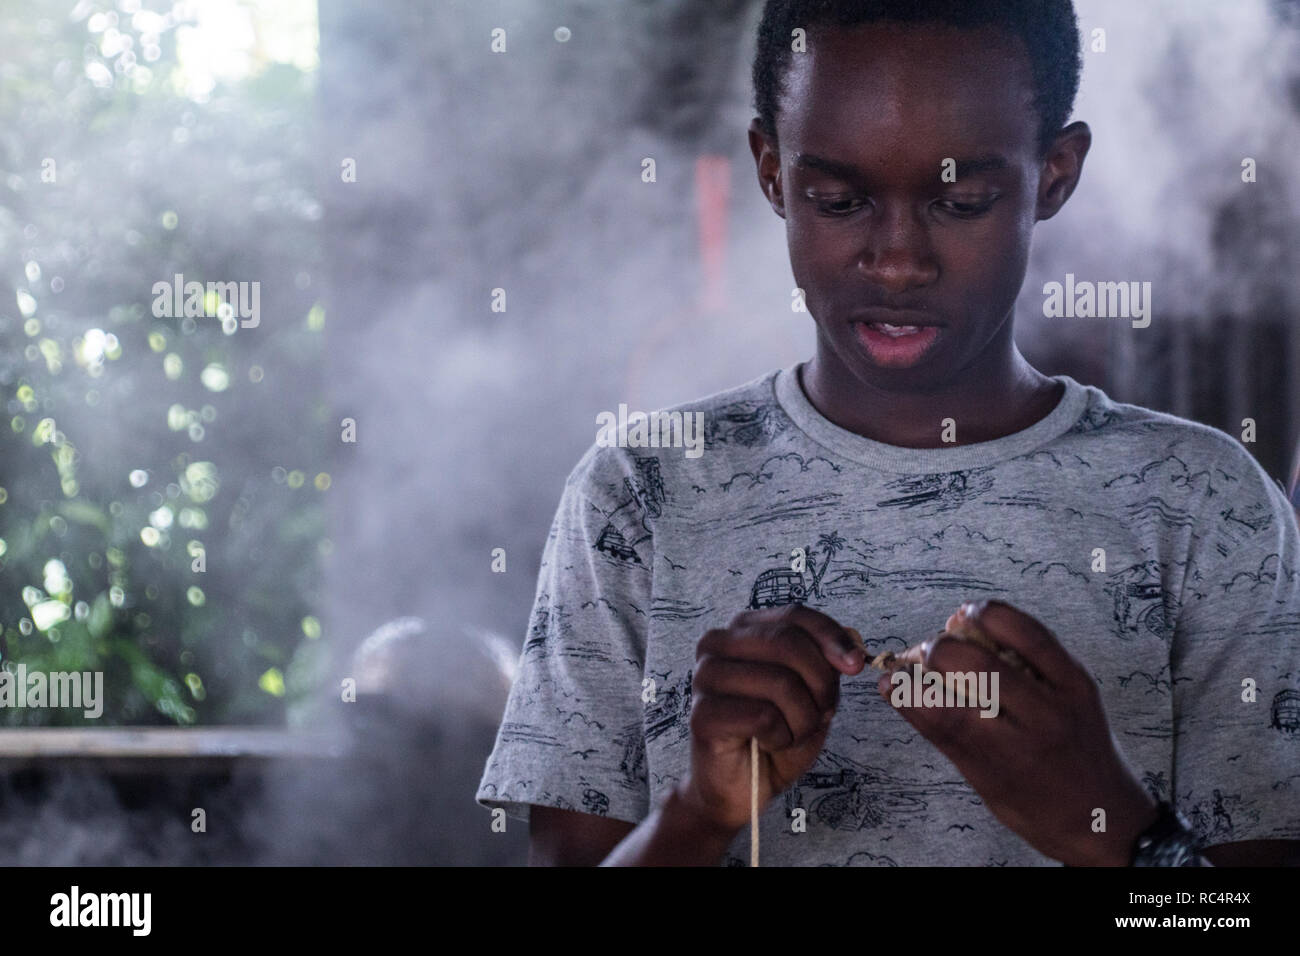 Le portrait d'un garçon africain faisant quelques mains Banque D'Images